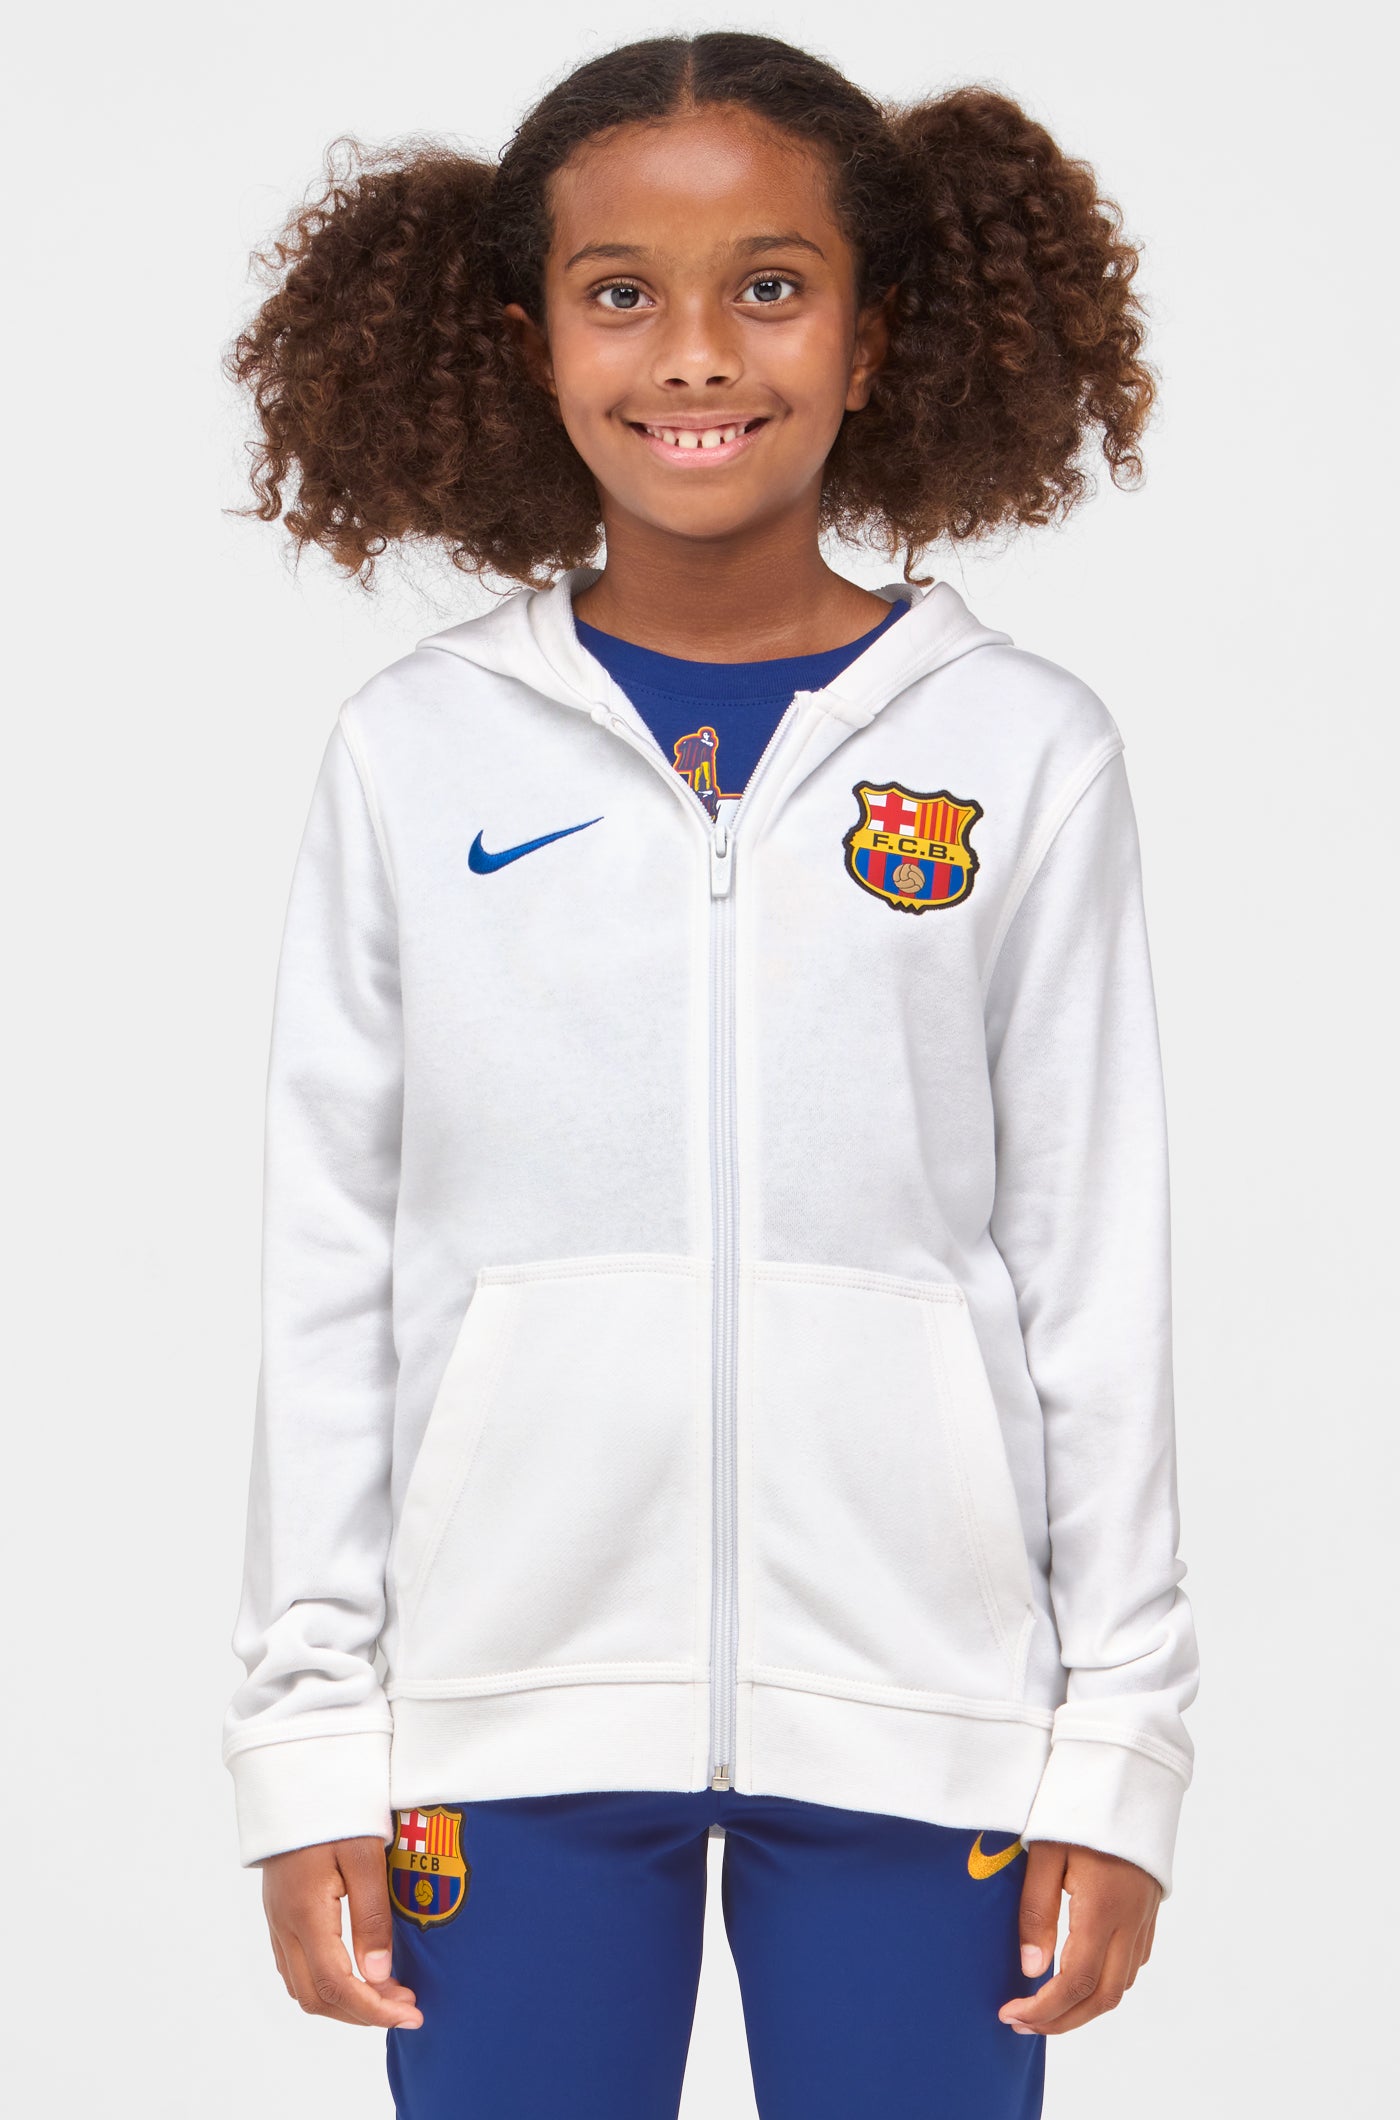 Veste Nike enfant 12-13 ans - 12 ans